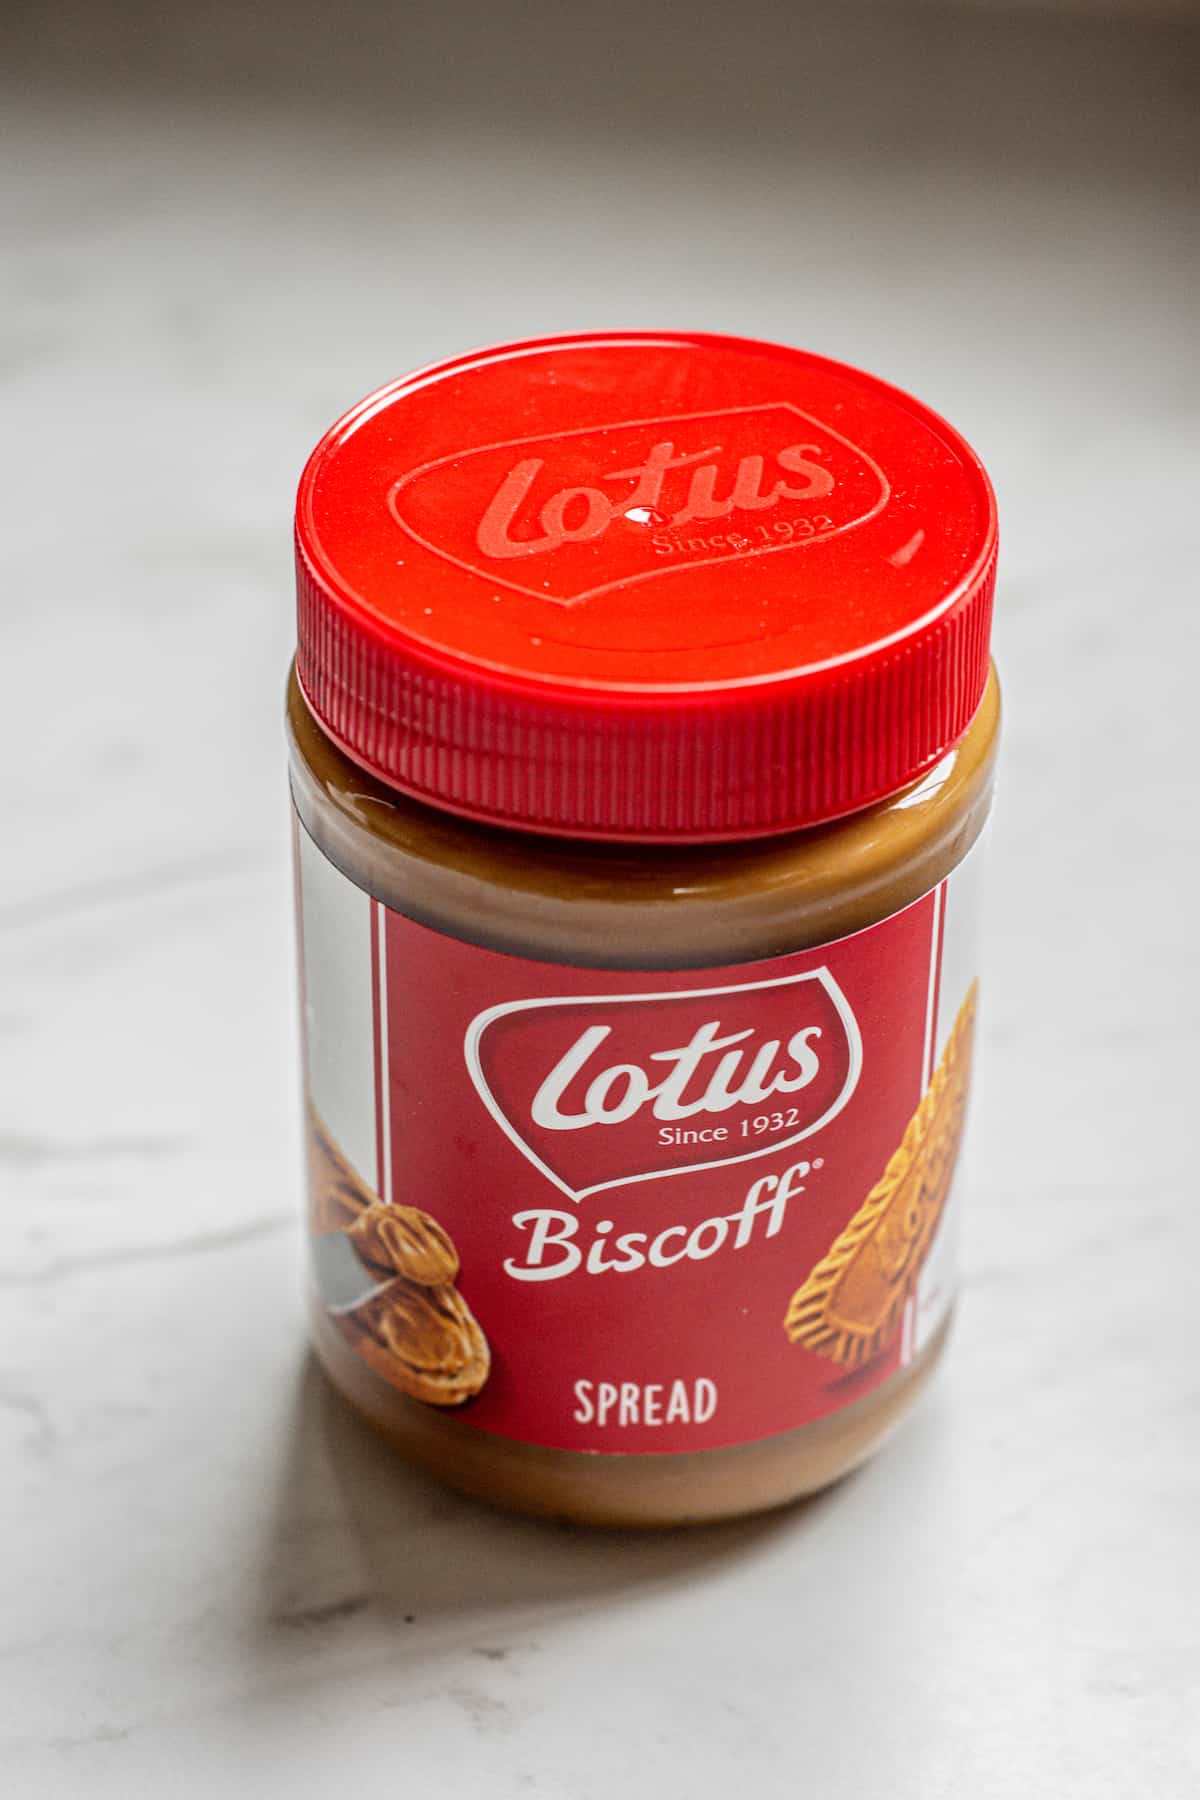 a jar of lotus biscoff spread.